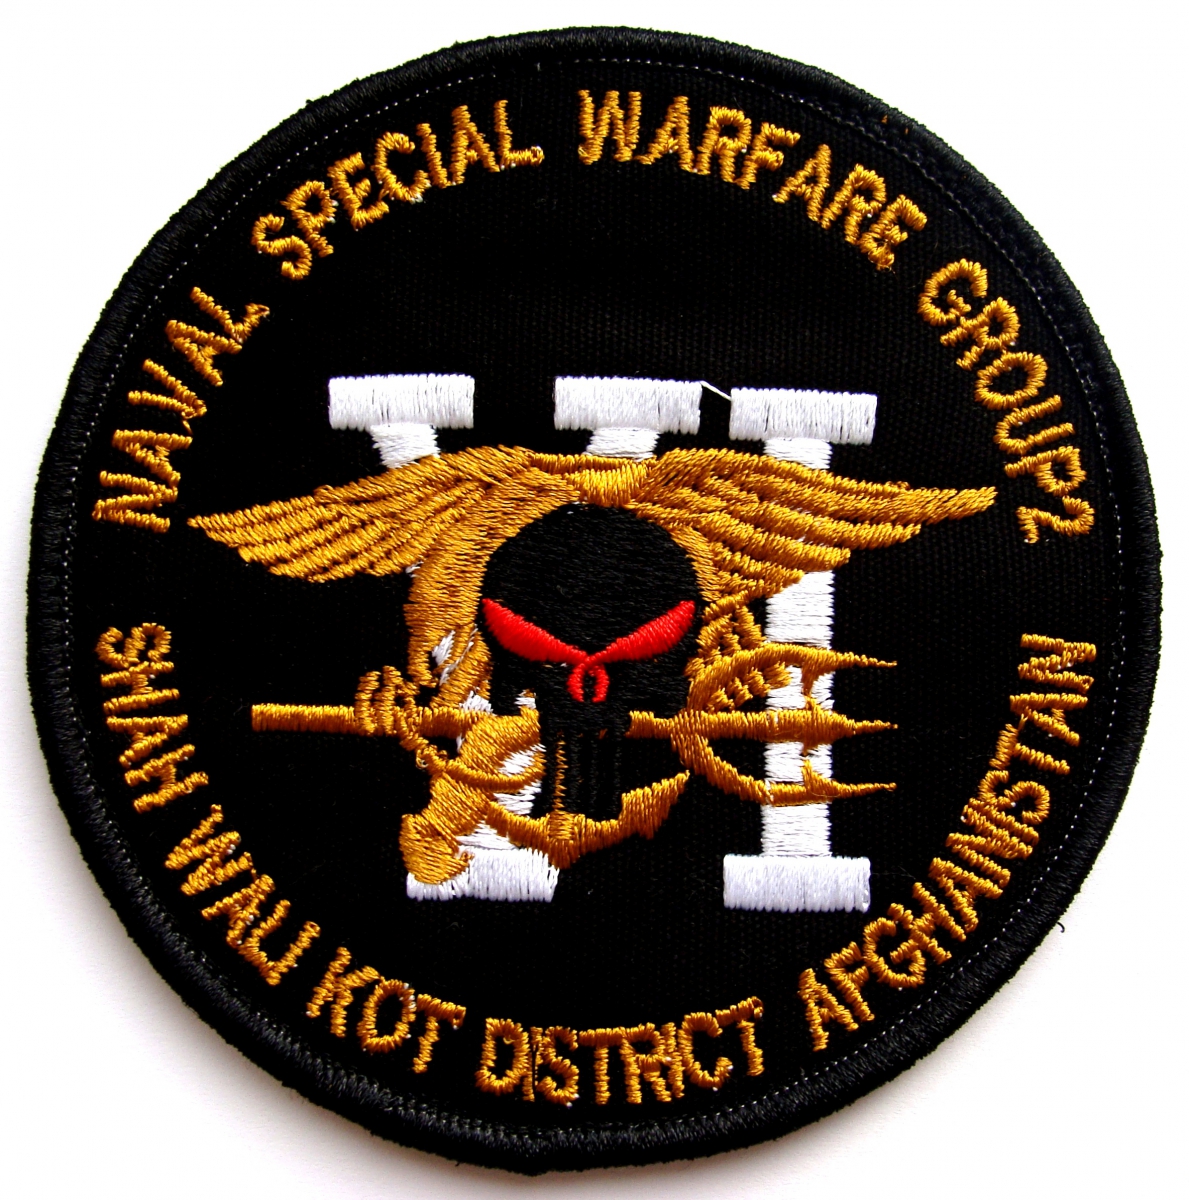 шеврон 2-й военно-морской группы США специальных приемов ведения войны, район Шах Вали Кот, Афганистан.